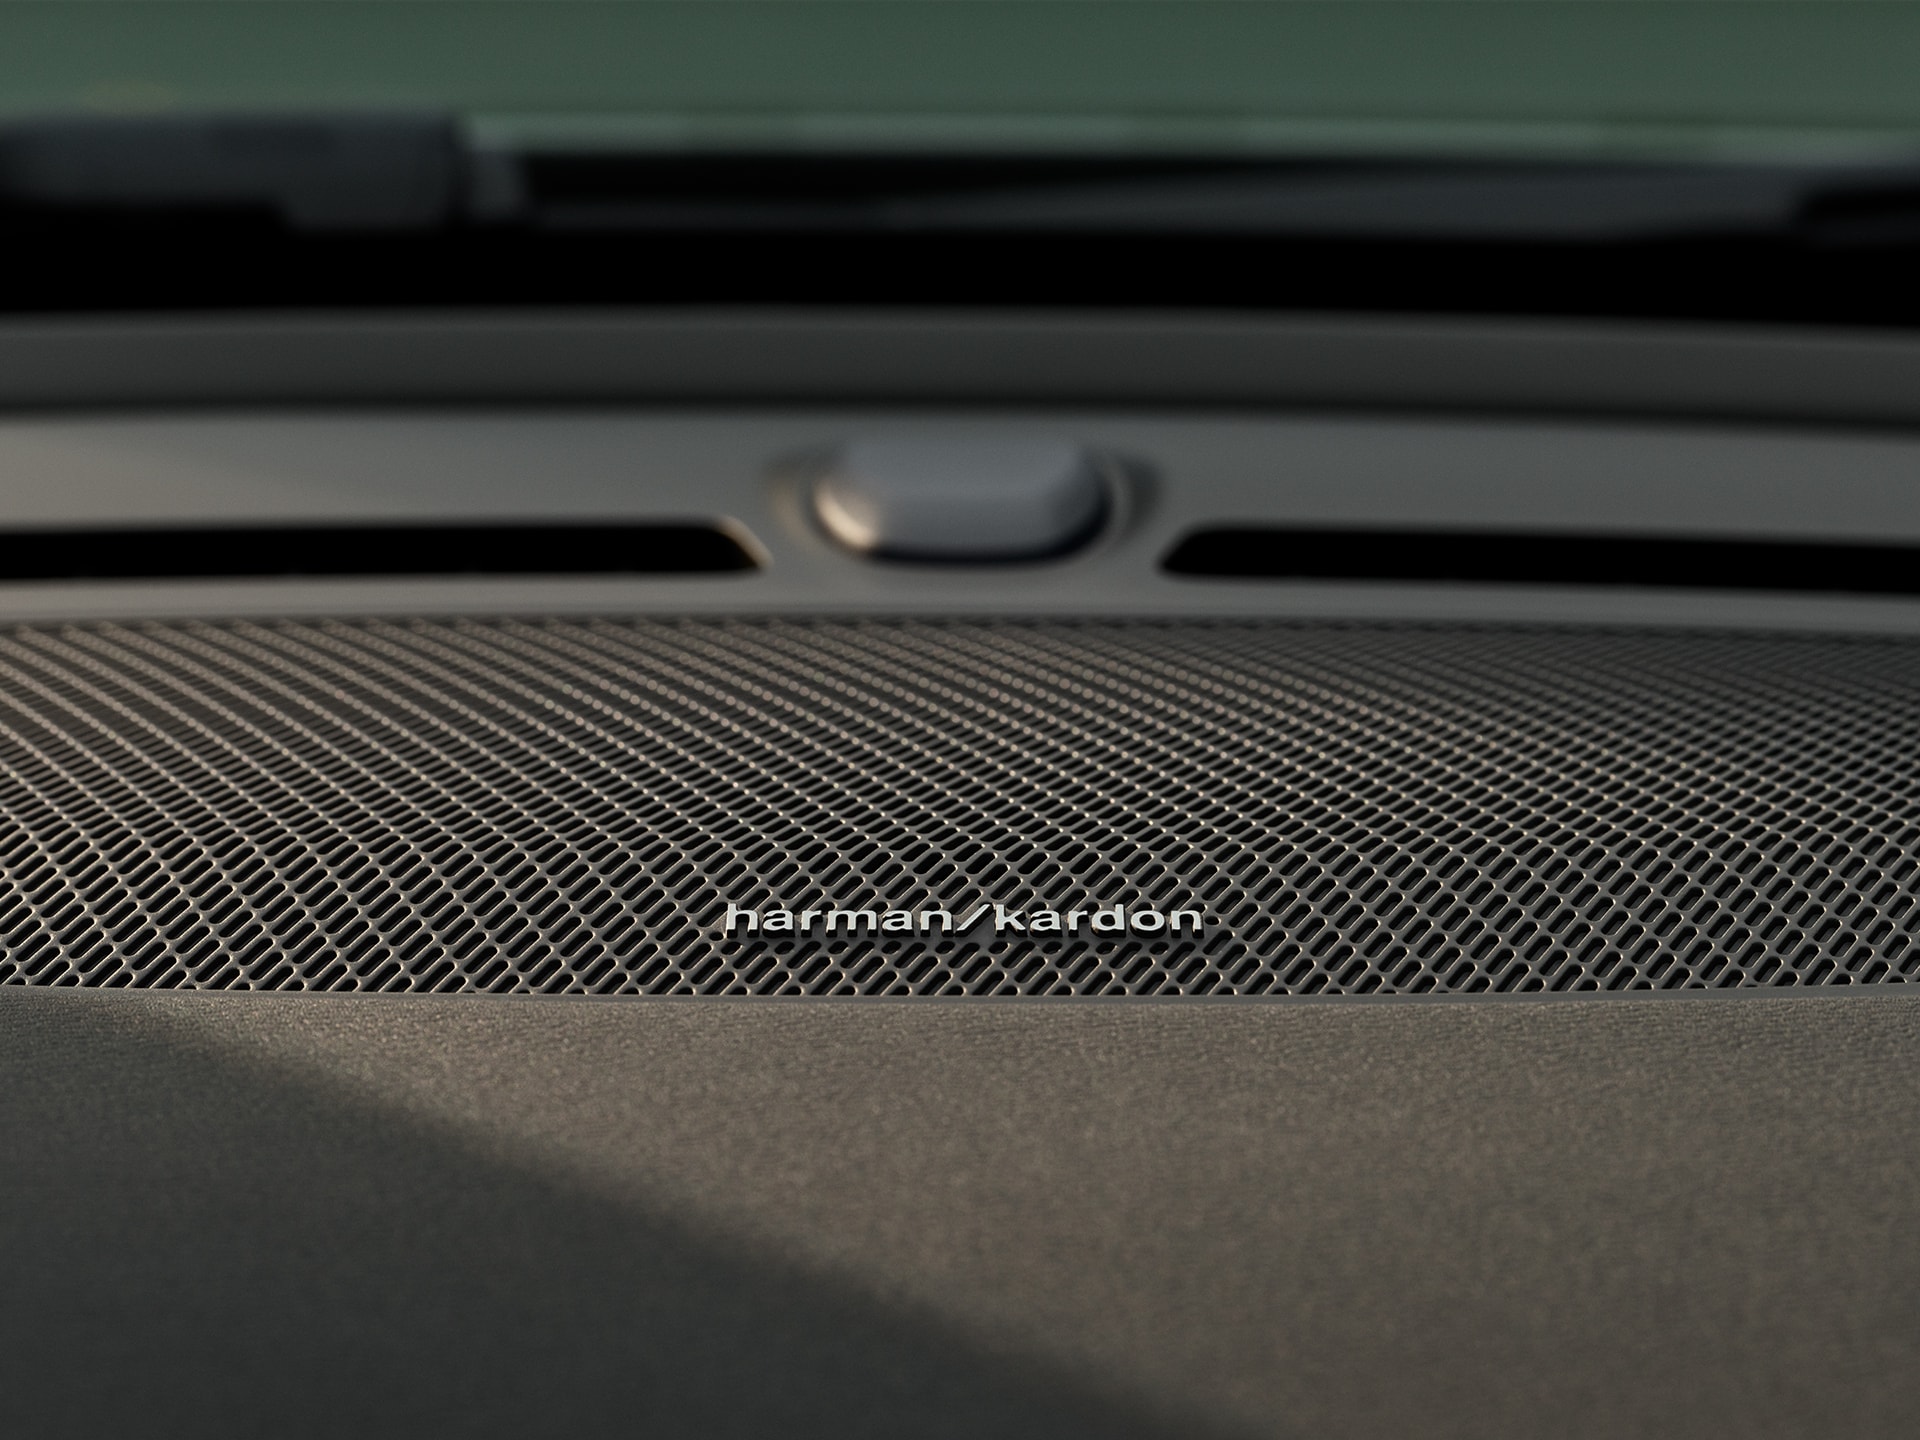 Detaljbild av Harman Kardon-högtalare i dörren på Volvo XC40 Recharge.